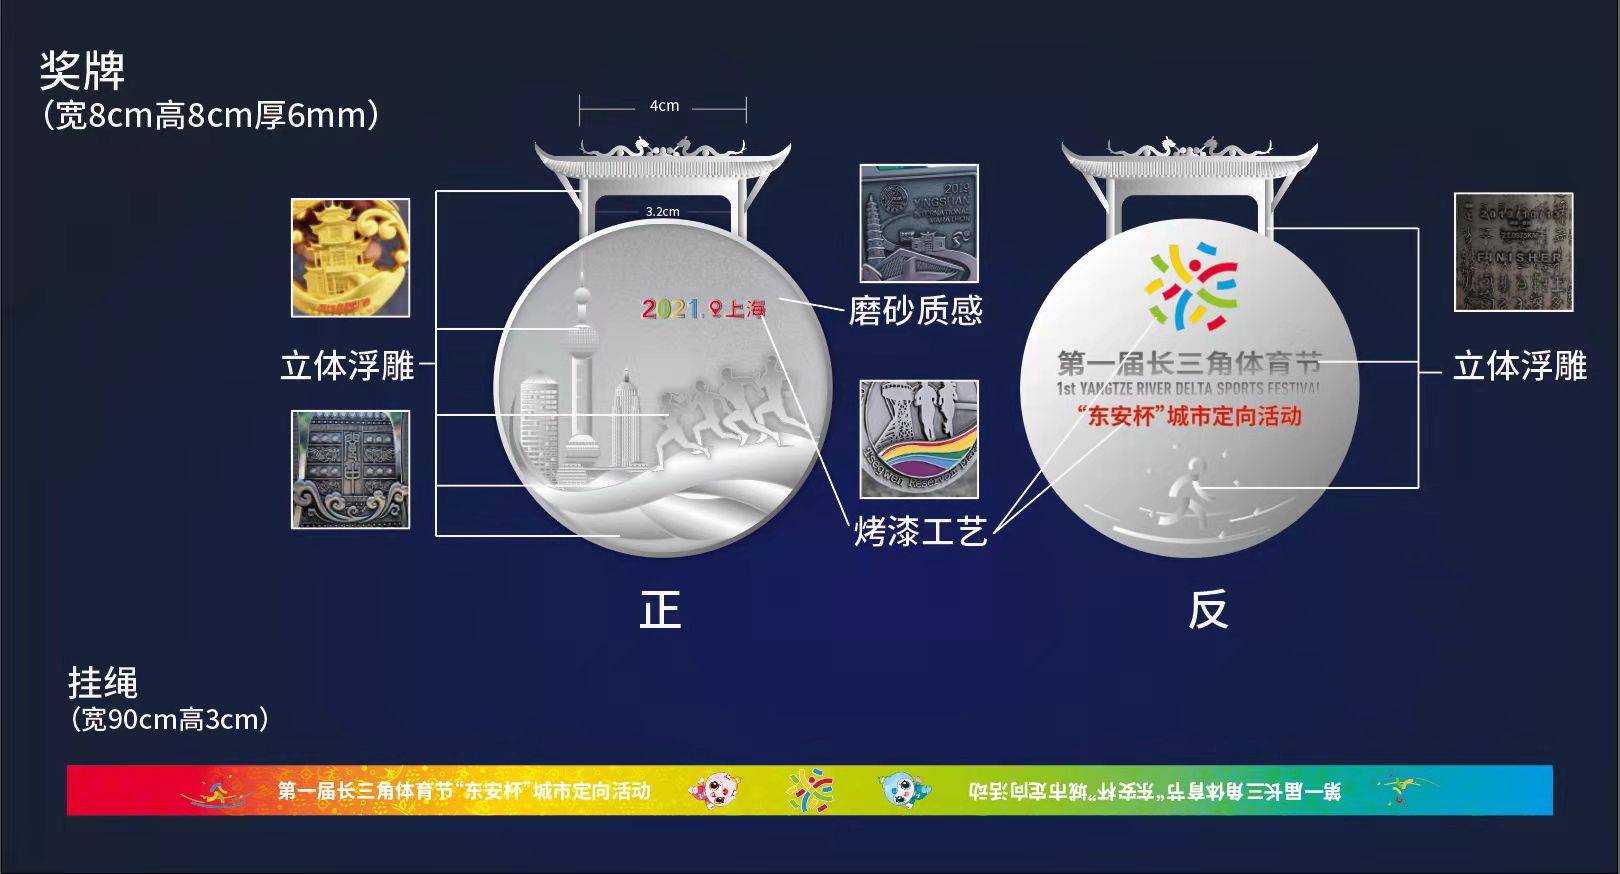 上海海湾森林国家公园 第一届长三角体育节—“东安杯”城市定向活动 稀缺名额 火热报名中！欢乐家庭套票仅售78元！